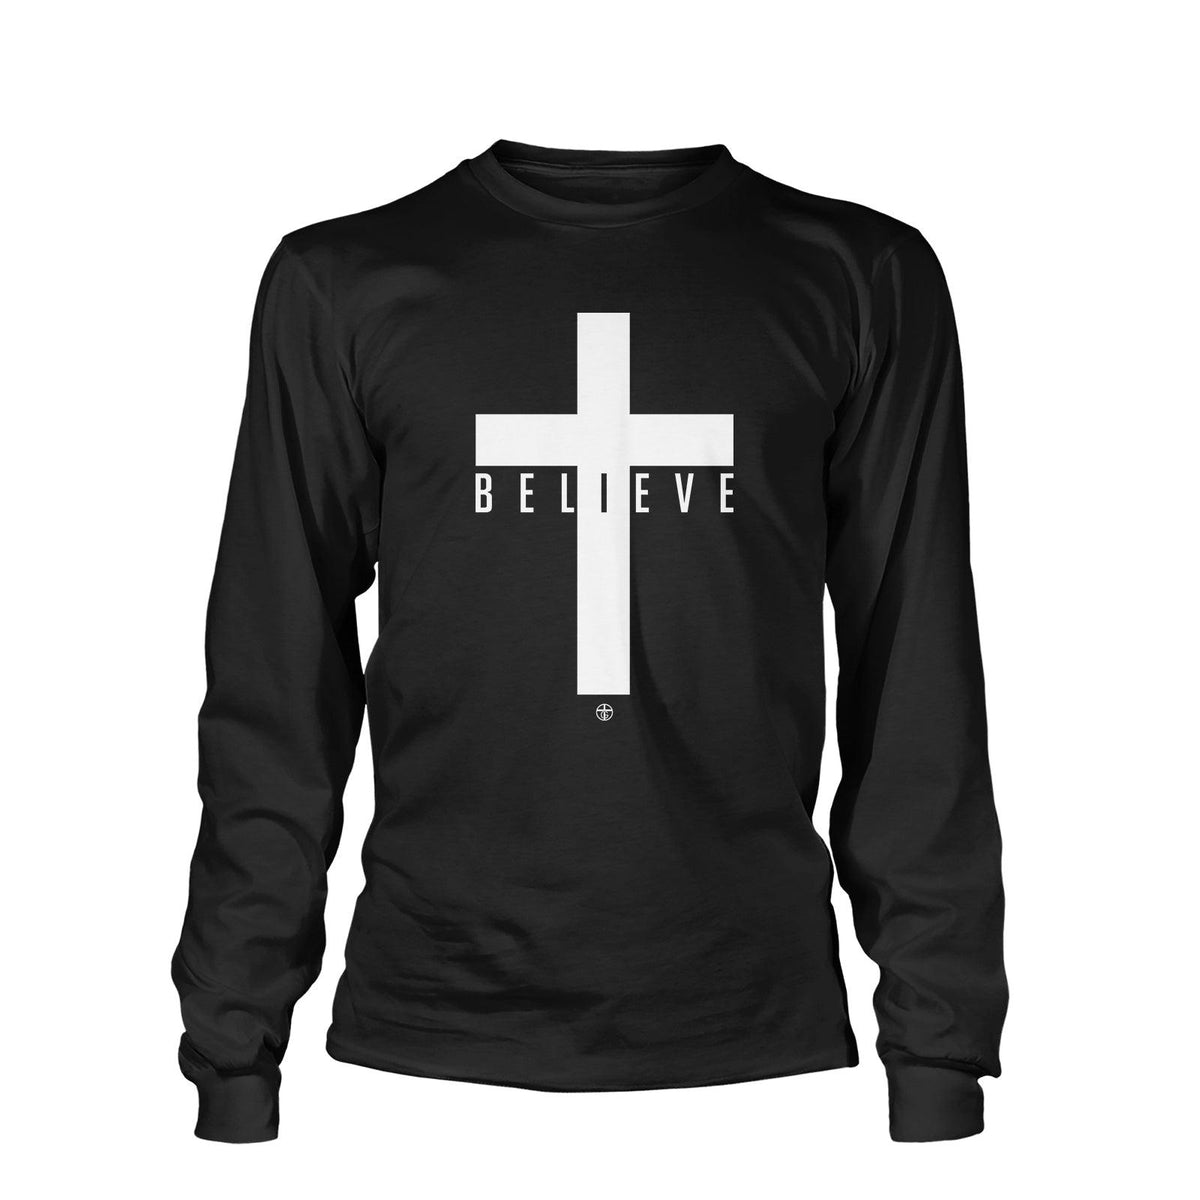 Cross Believe Long Sleeve - Our True God